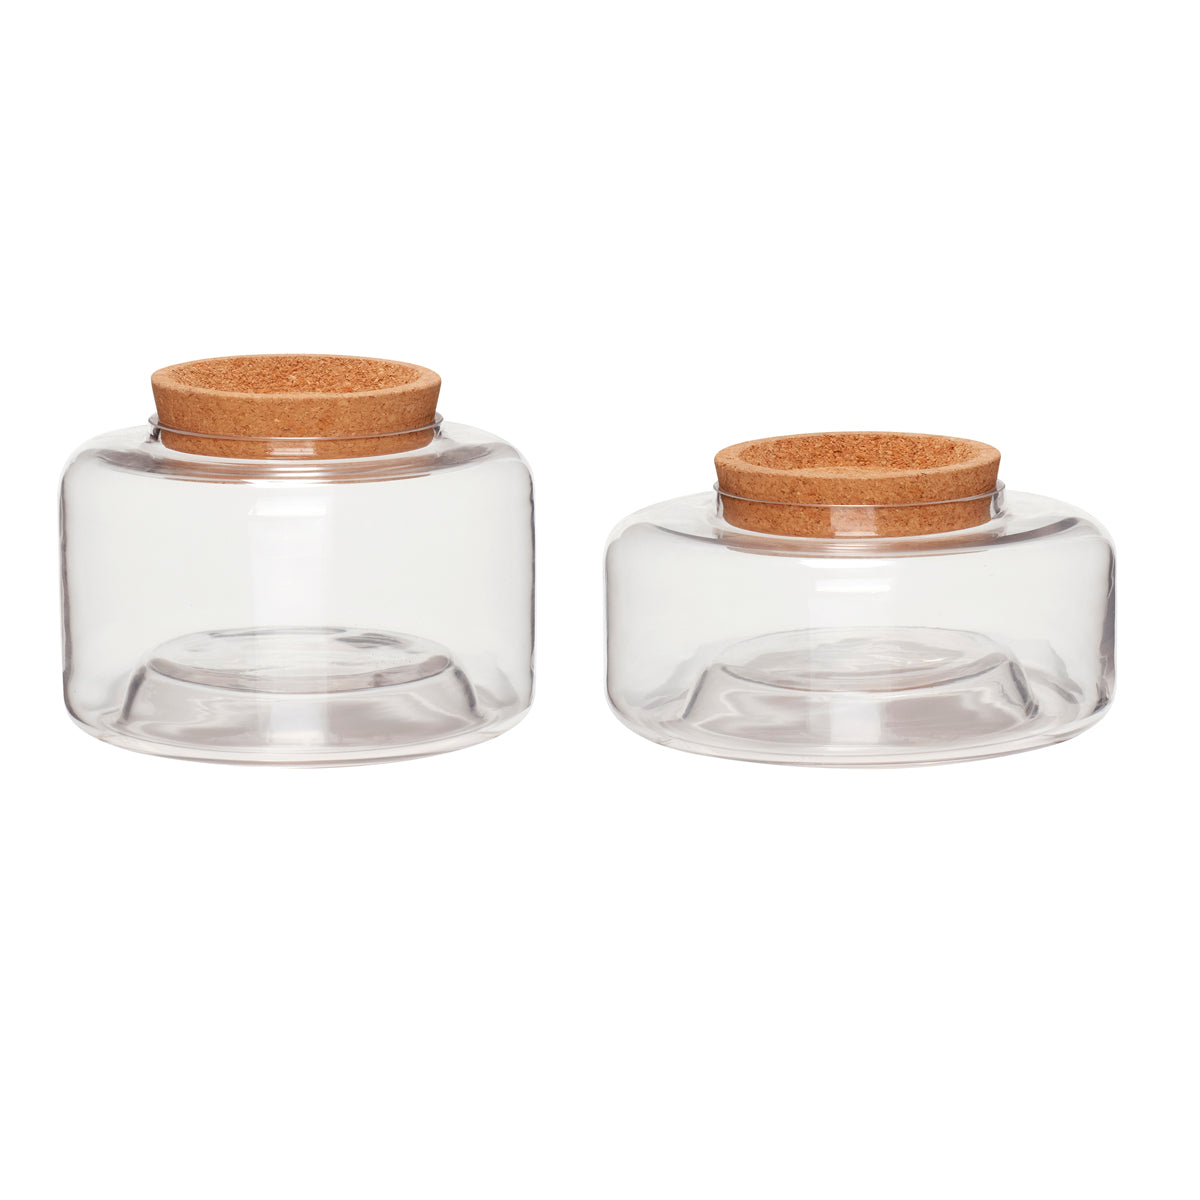 Hubsch Storage glass w/cork lid, clear, s/2